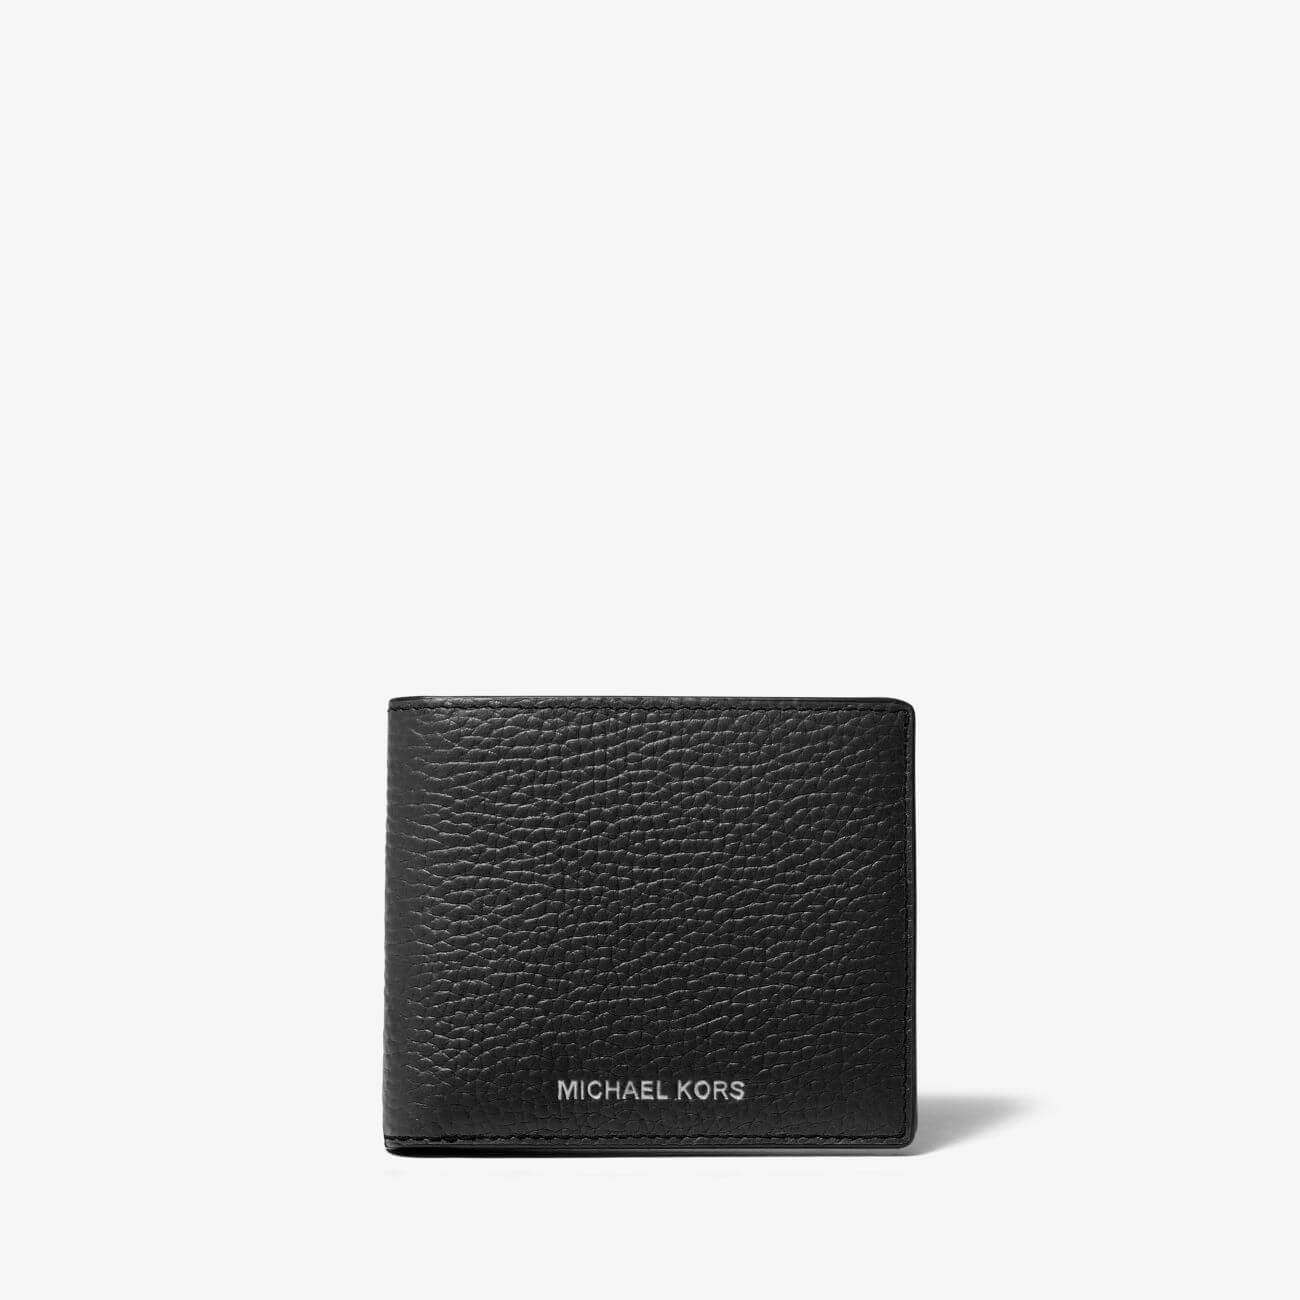 Кошелек Michael Kors Hudson Pebbled Leather Slim Billfold, черный органайзер планировщик формата a6 с карманами для банковских карт конвертами для наличных бюджетными листами и стикерами